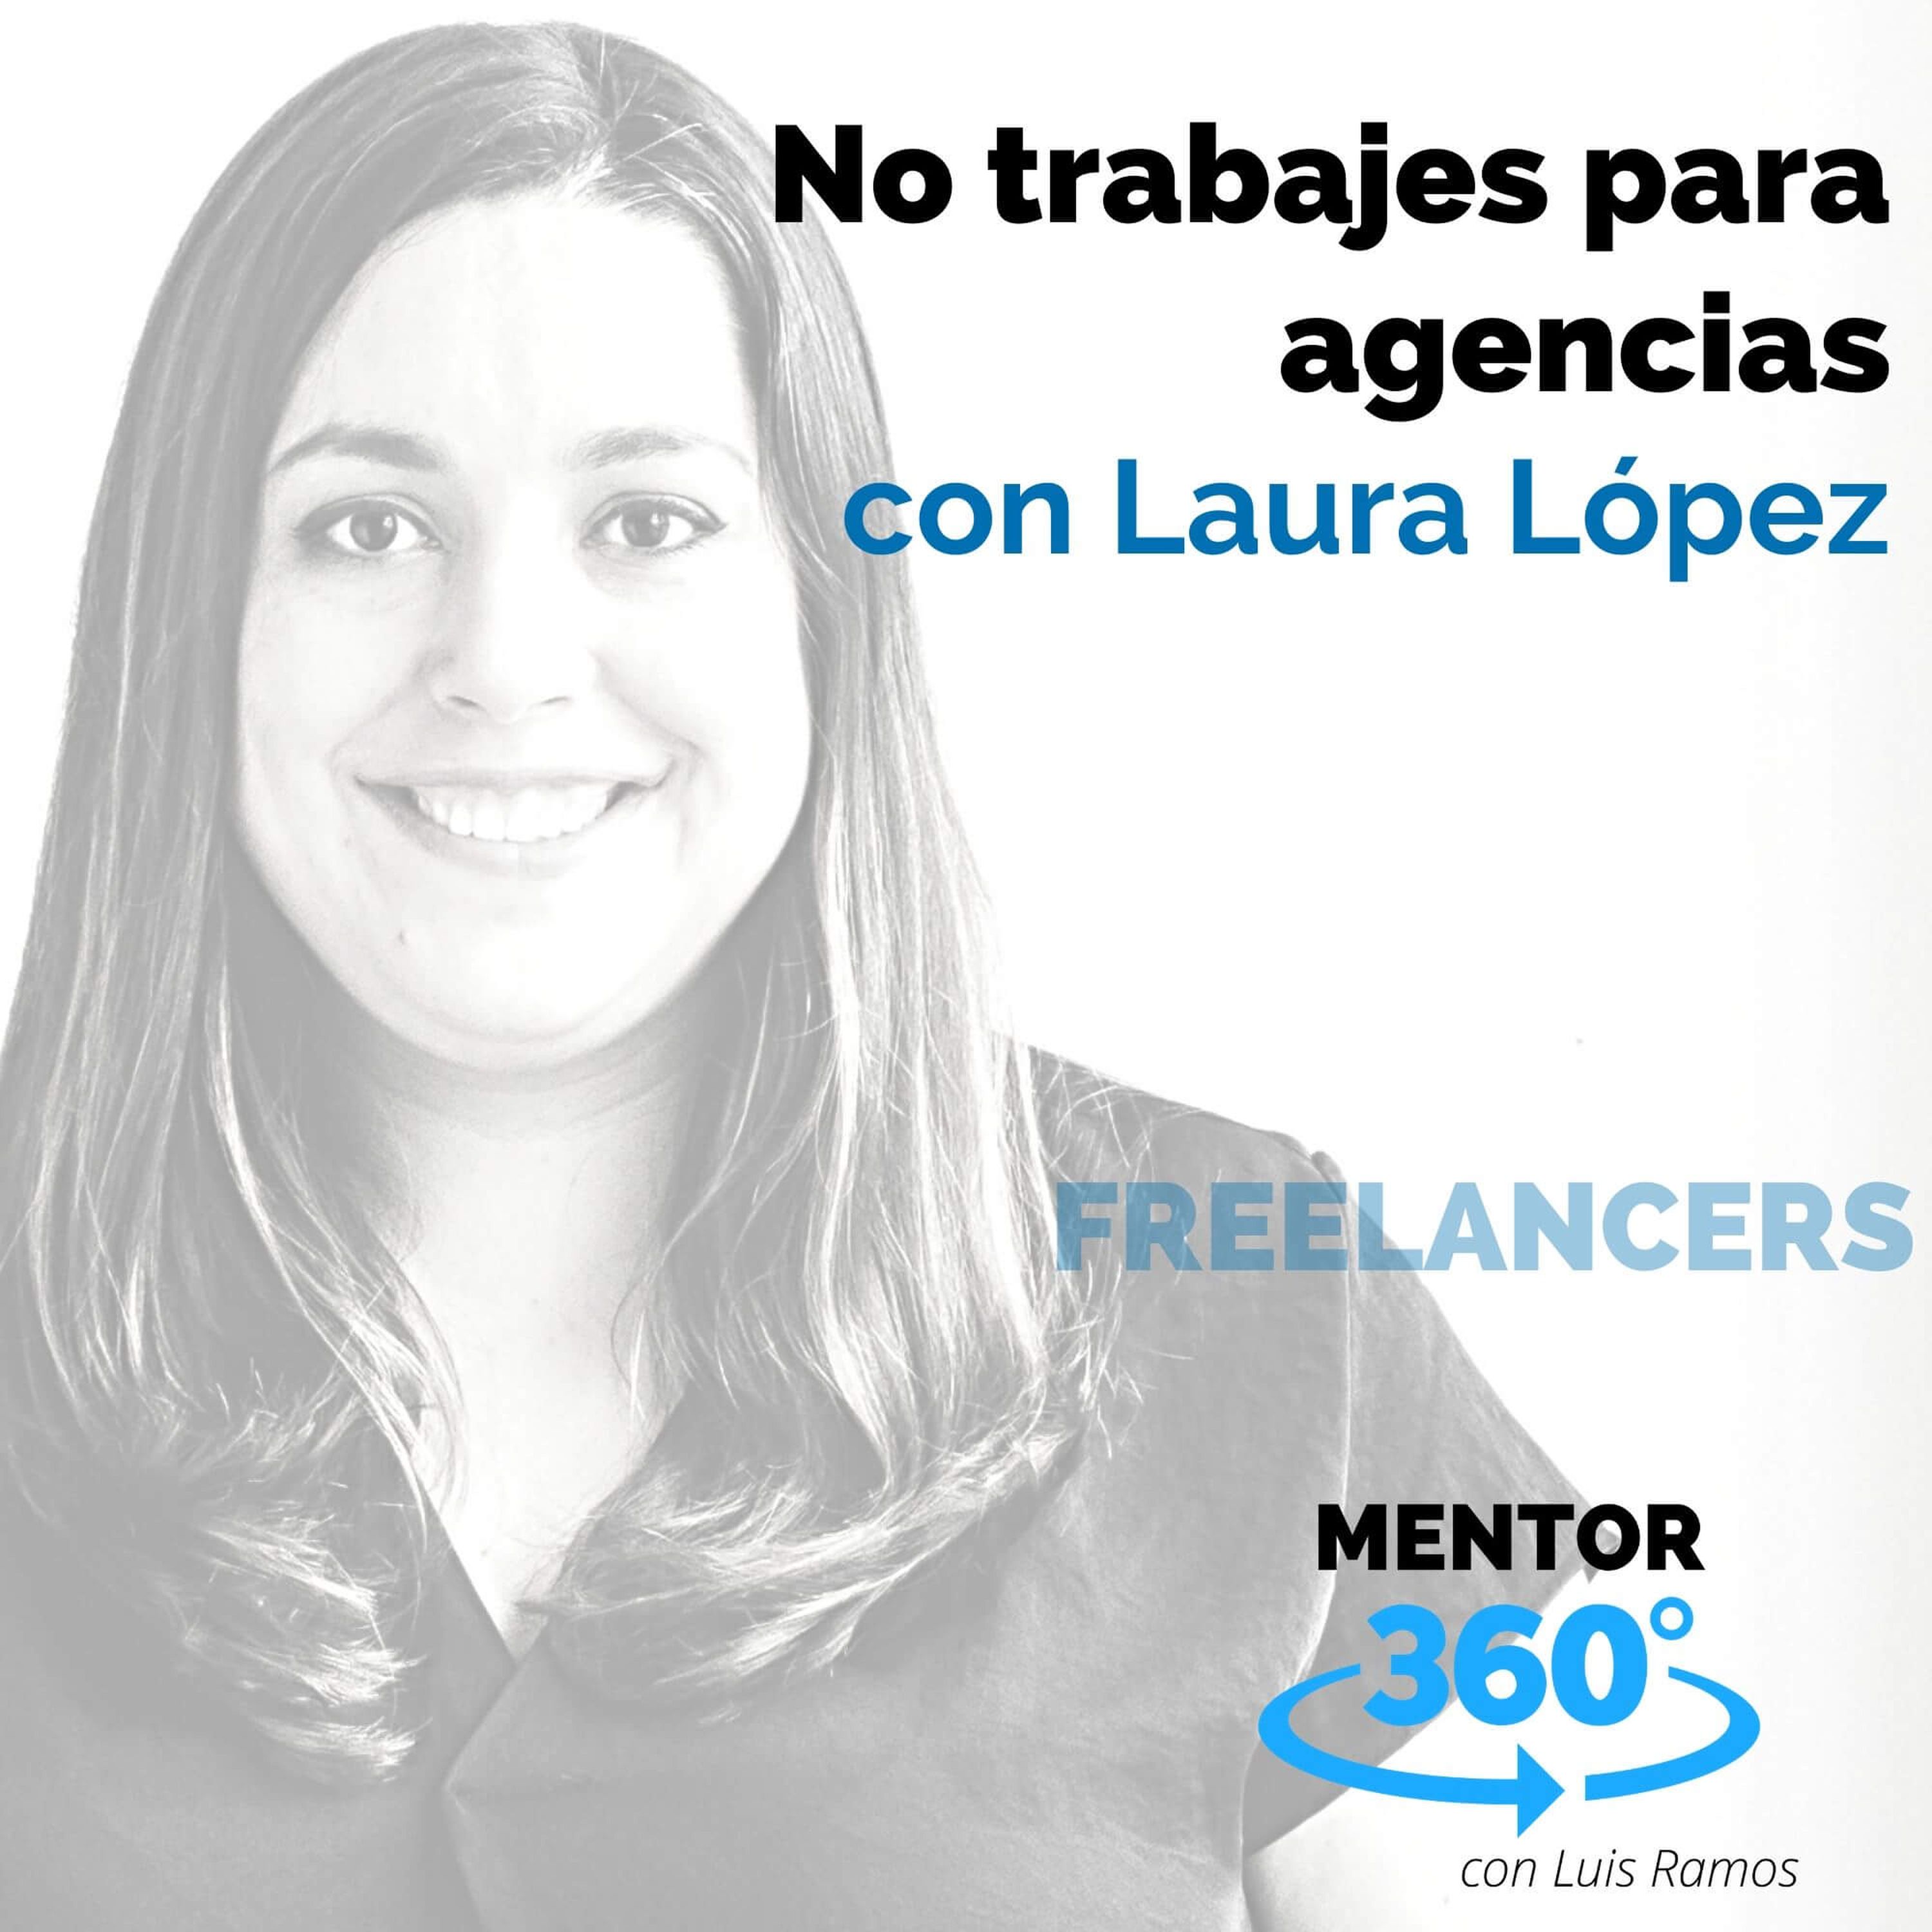 No trabajes para agencias, con Laura López - FREELANCERS